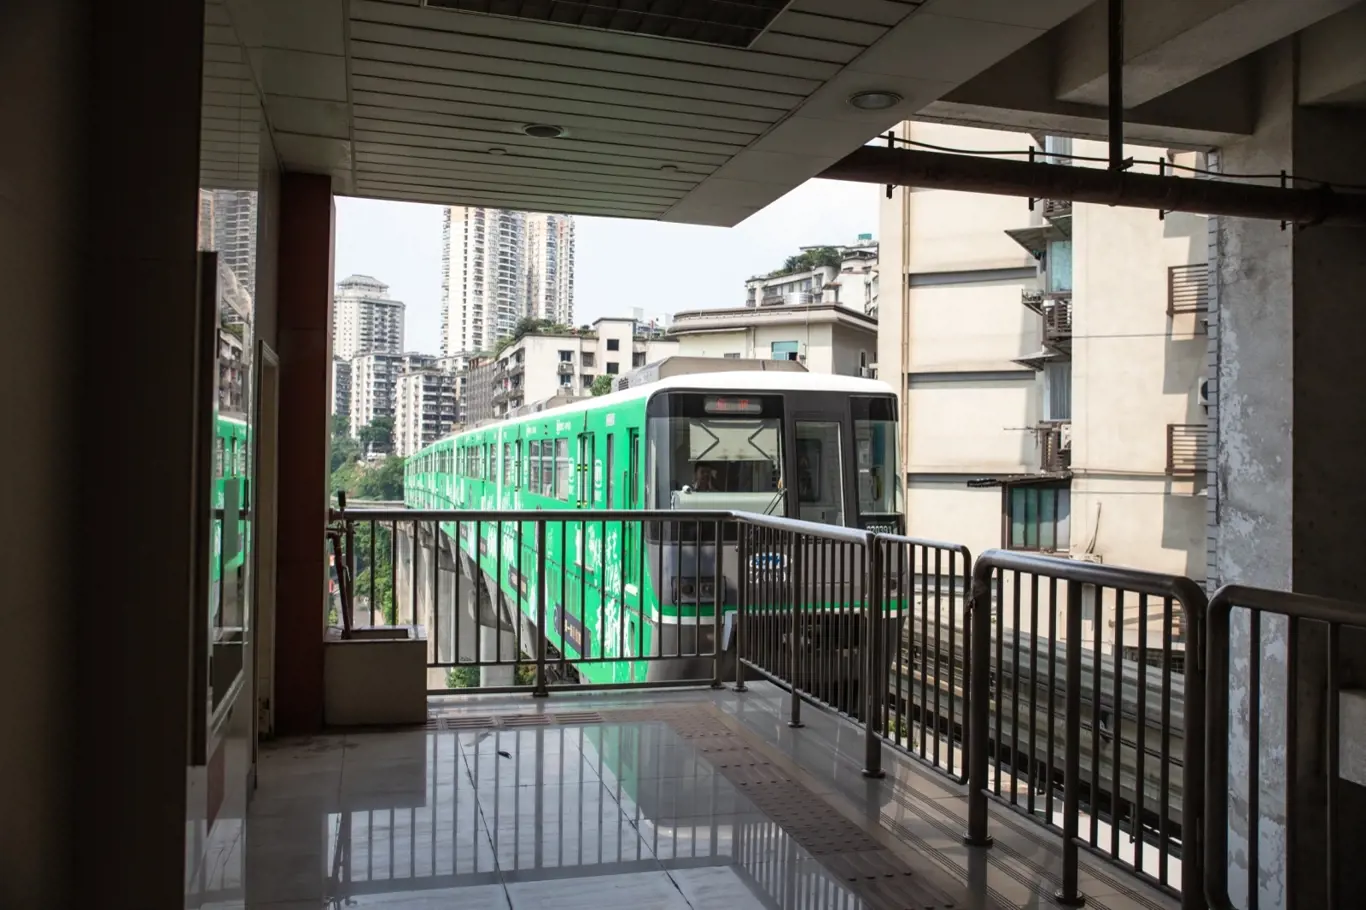 Ve městě Čchung-čching vlak projíždí panelákem.